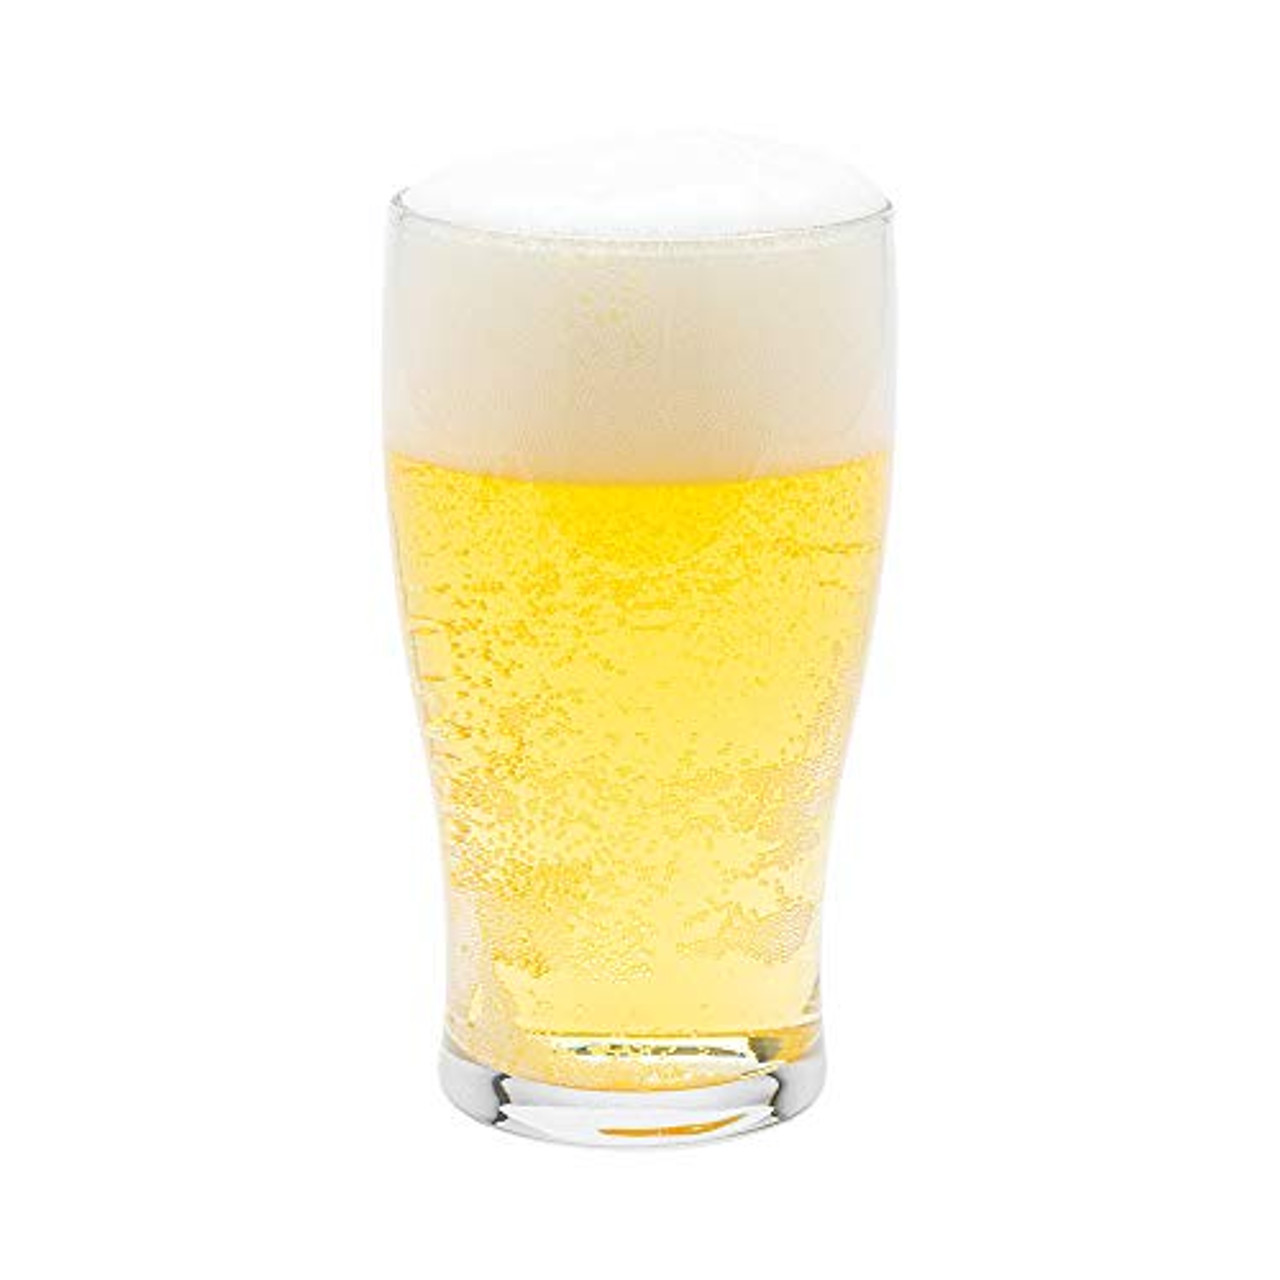 Restaurantware 5 Ounce Beer Tasting Glasses, Set of